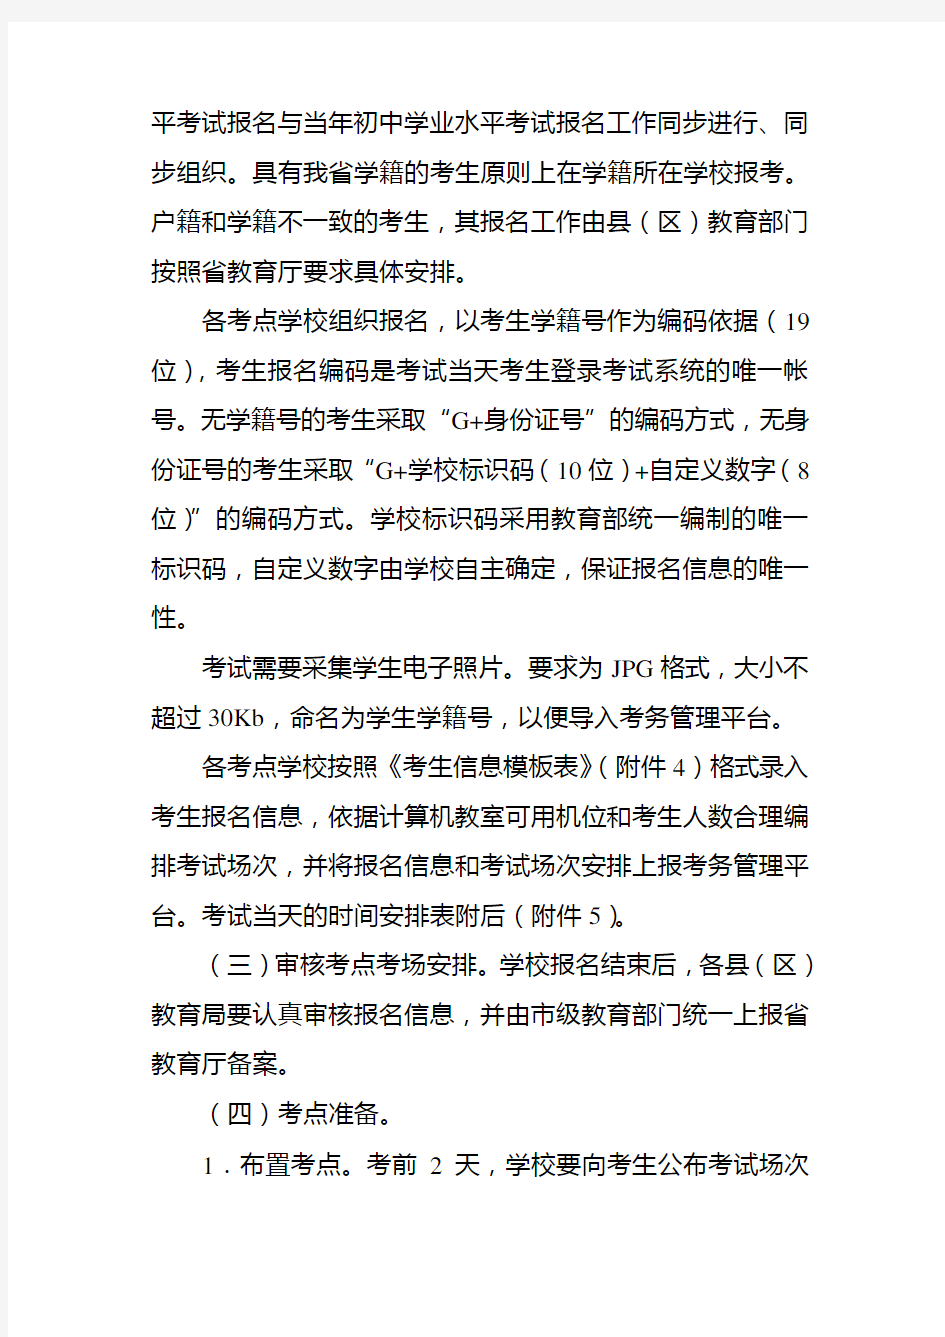 陕西省初中信息技术学业水平考试考务组织流程